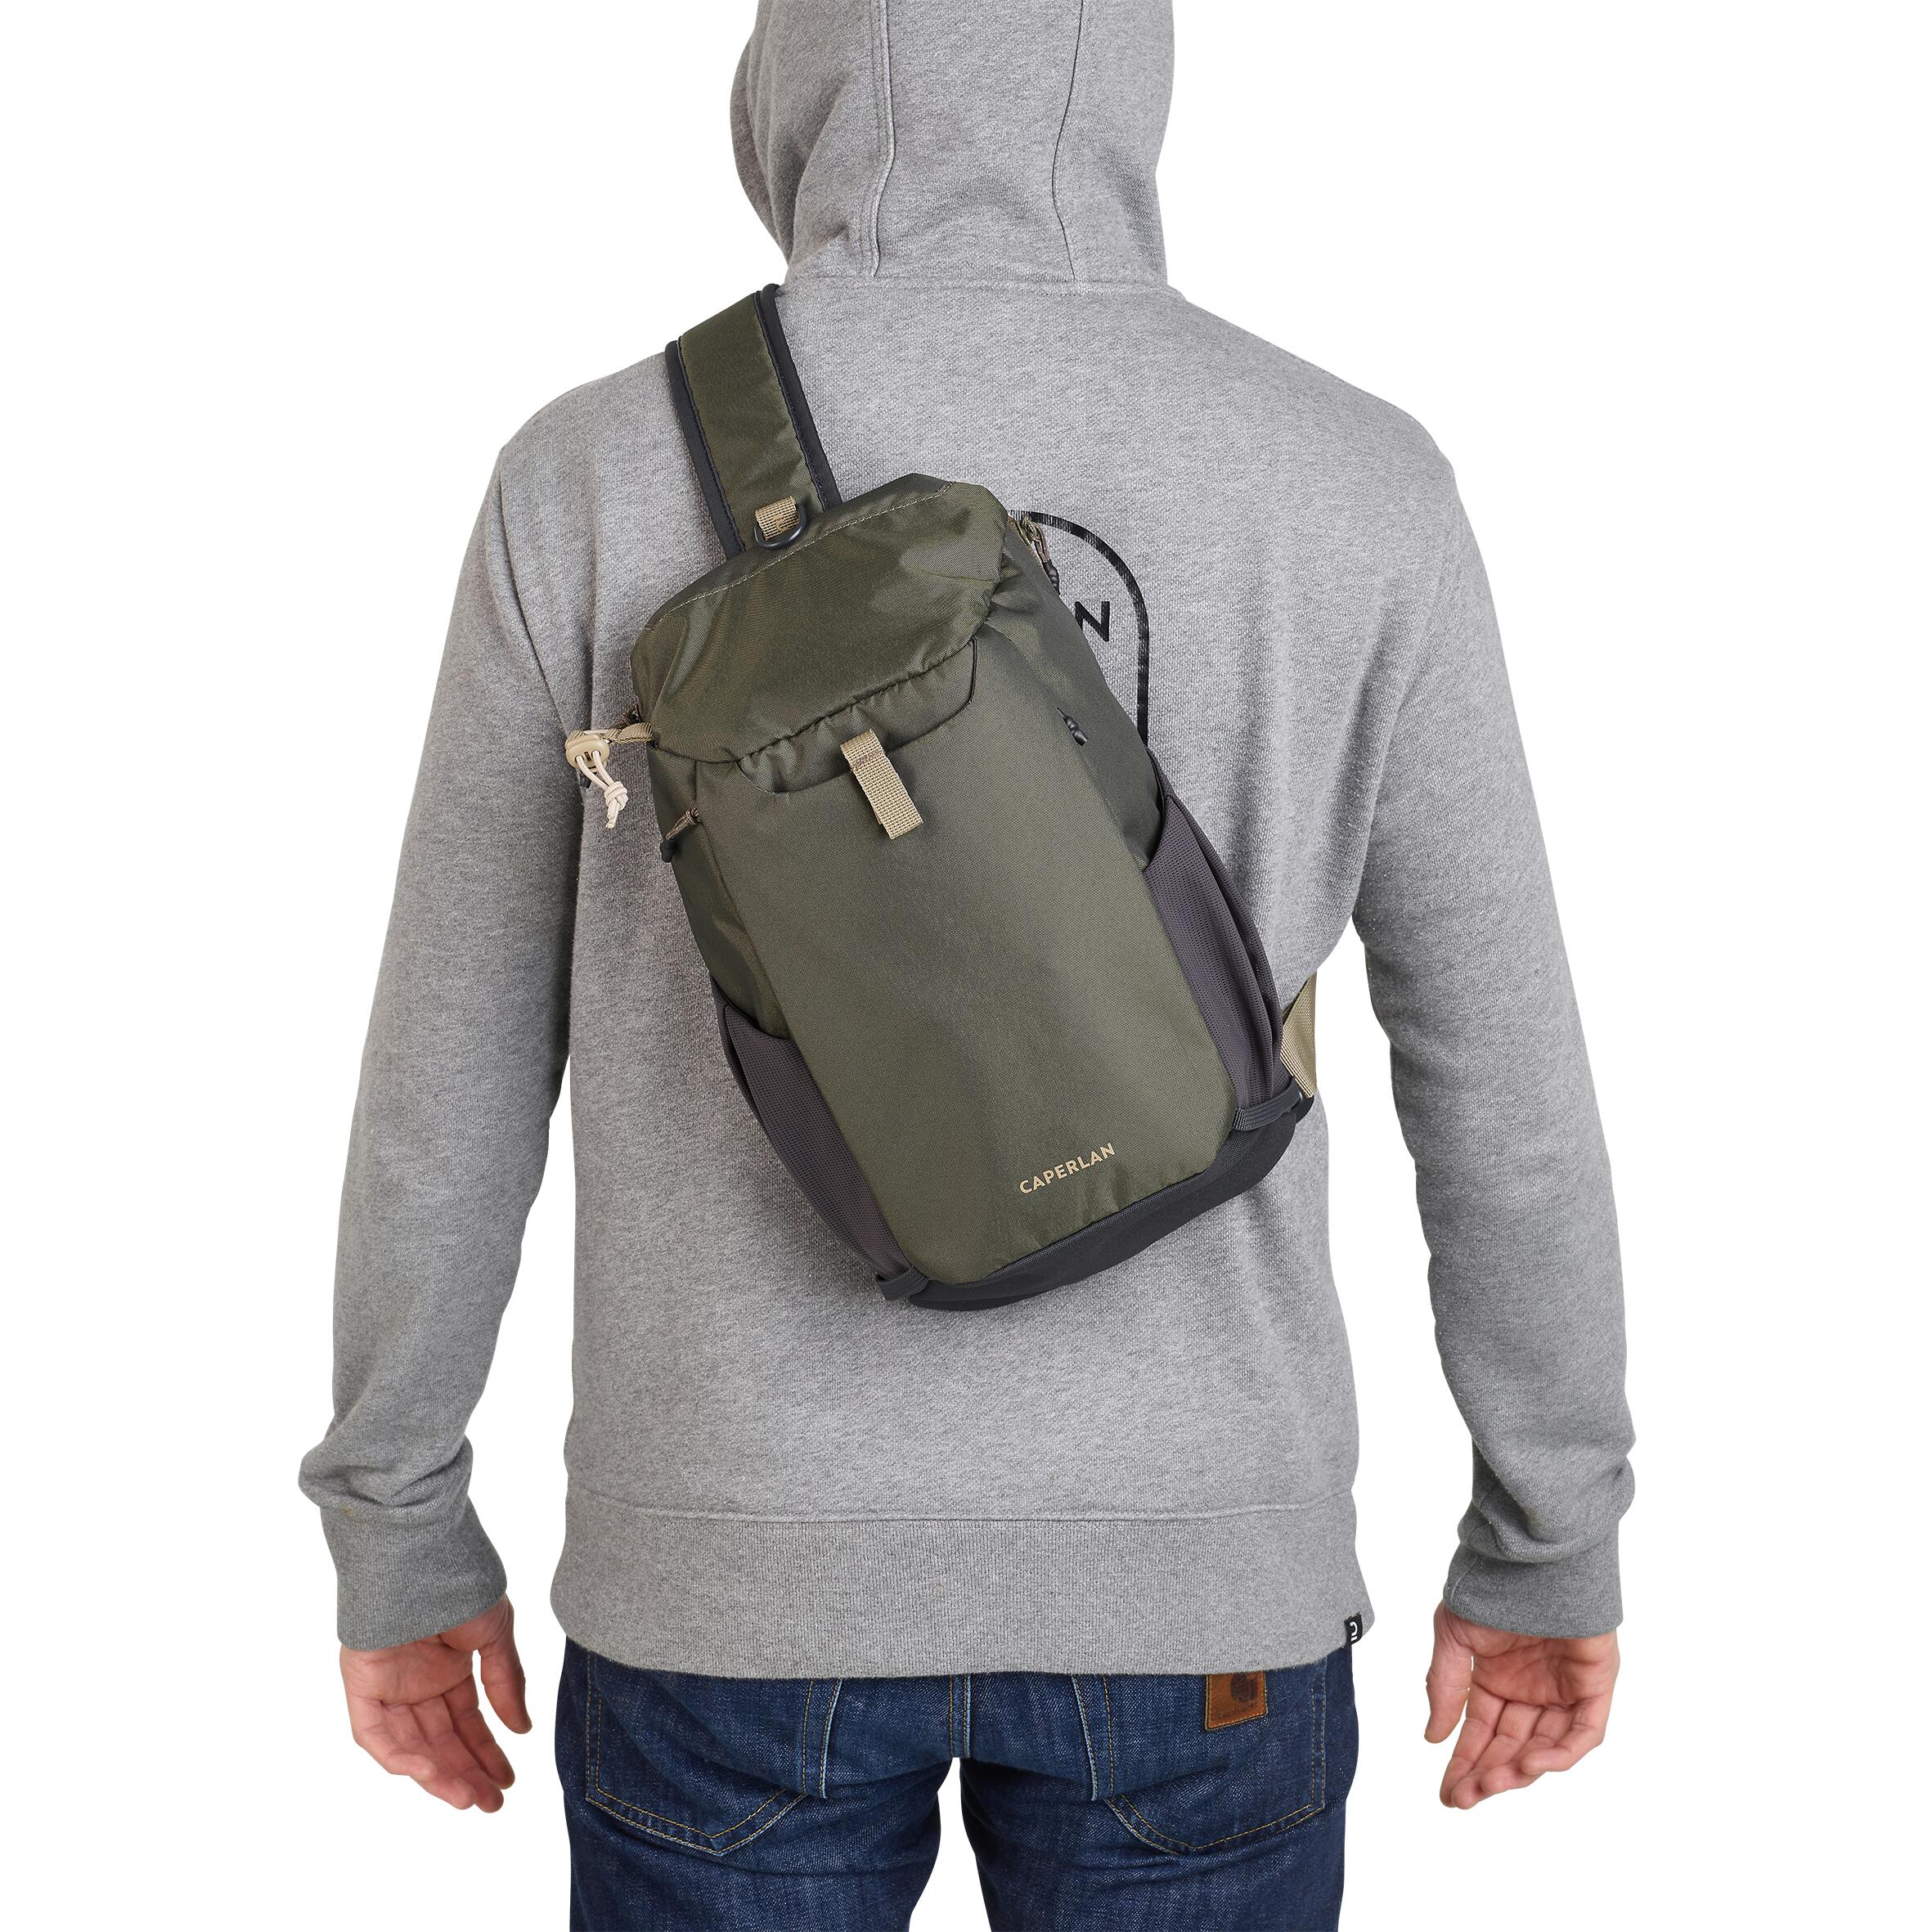 Caperlan Fishing 9 L Shoulder Bag - Khaki 100 Sling Bag - One Size